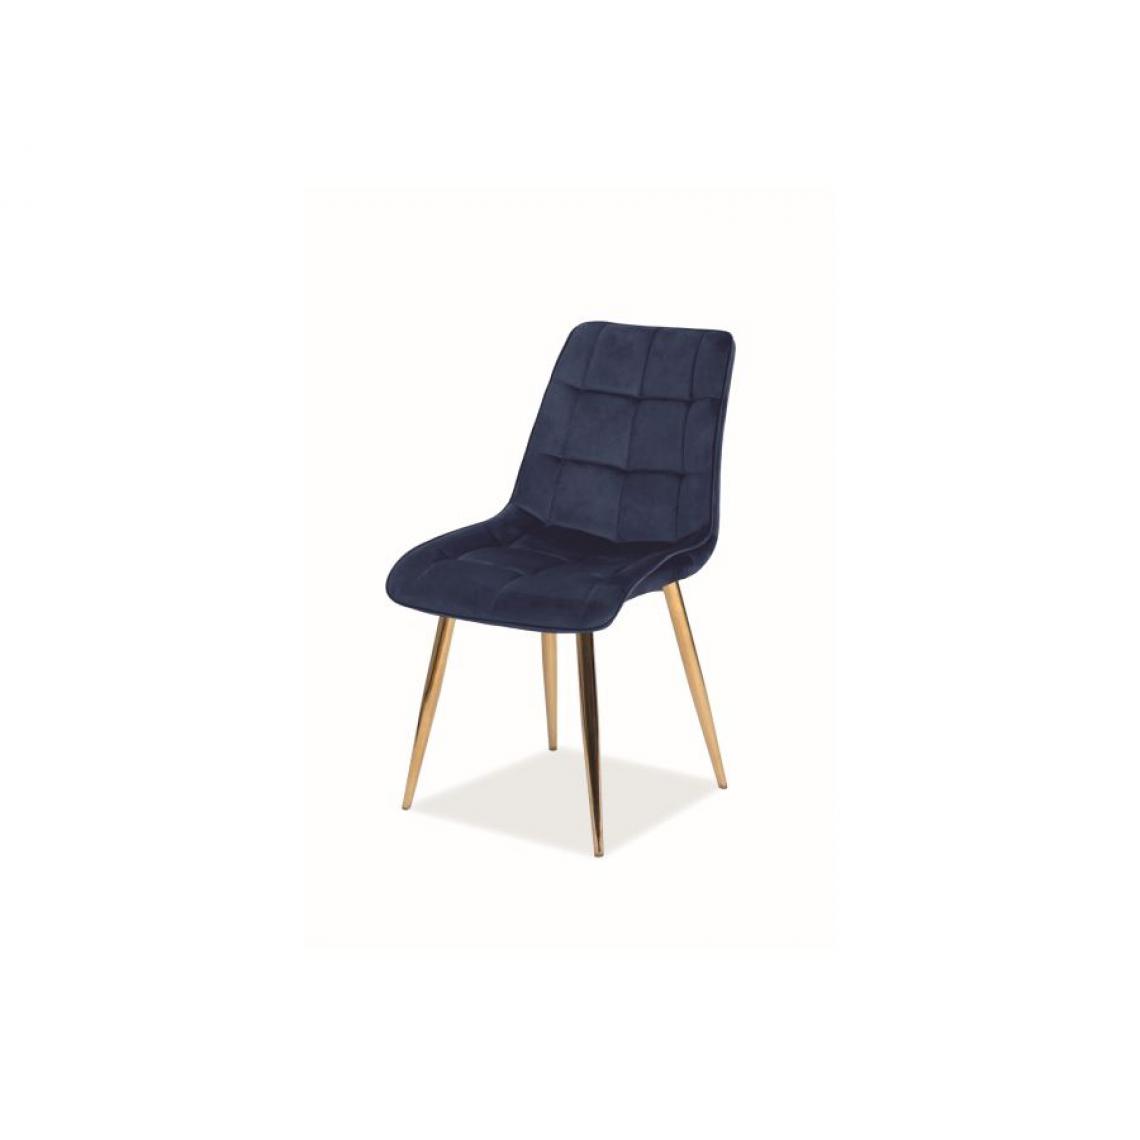 Hucoco - MASI | Chaise moderne matelassé pour salon | Dimensions : 89x51x44cm | Chaise velours | Pieds en métal - Bleu - Chaises